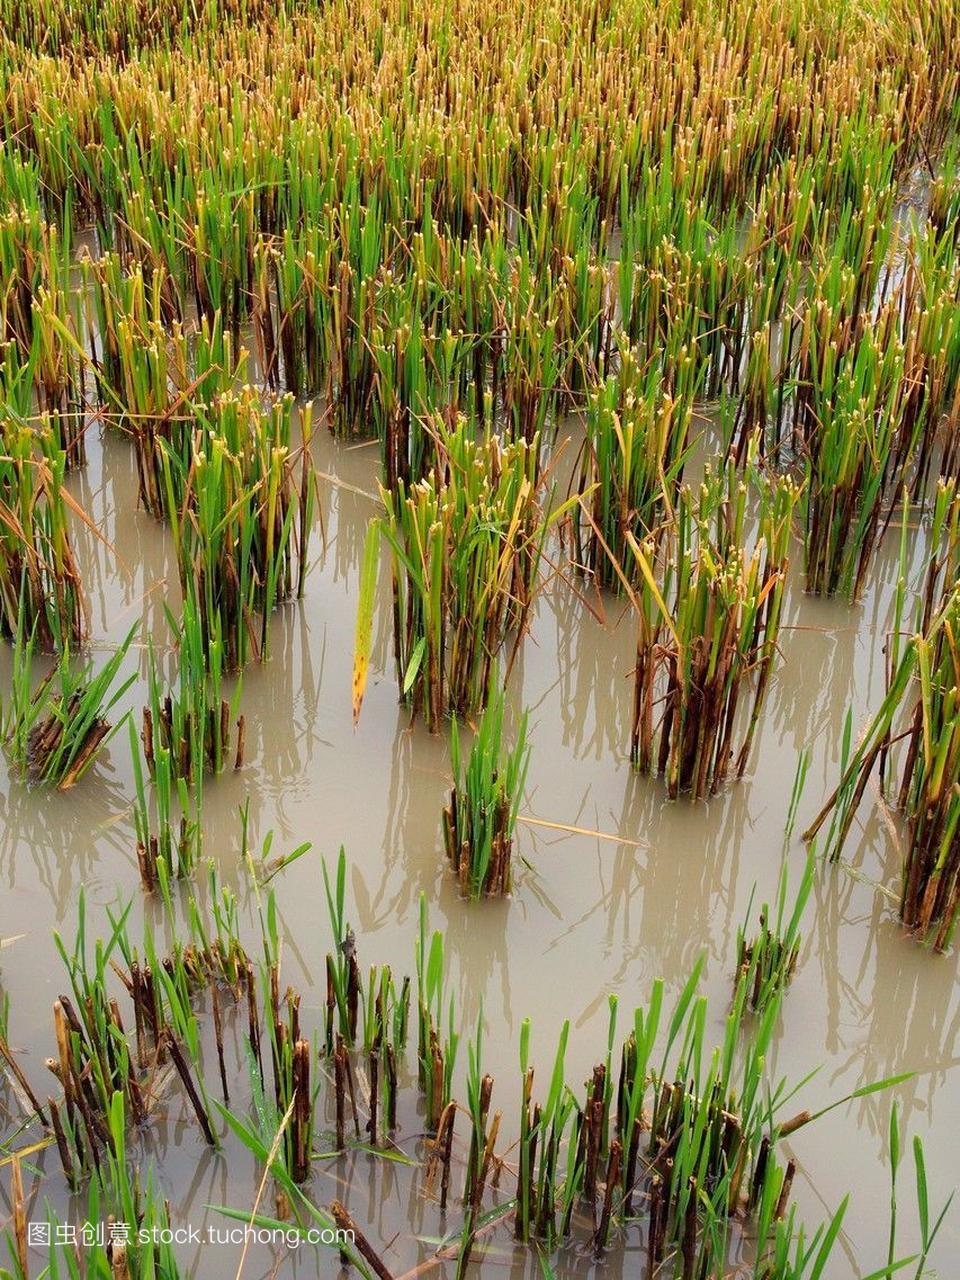 下雨天在水稻收获的季节。埃布罗河三角洲自然